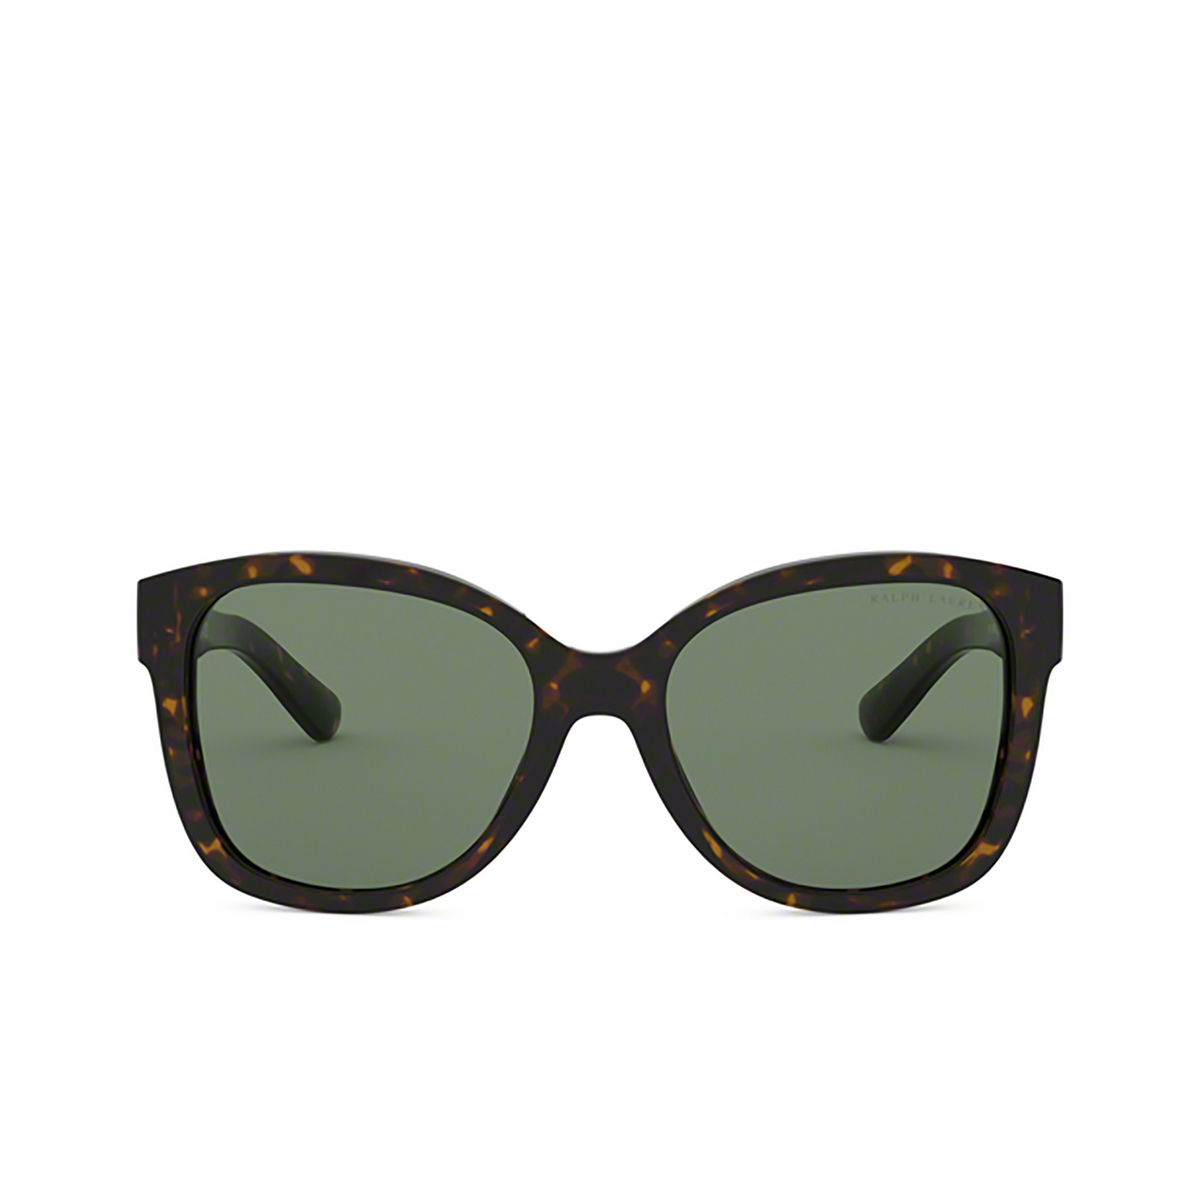 Ralph Lauren RL8180 Sunglasses 500371 SHINY DARK HAVANA - front view